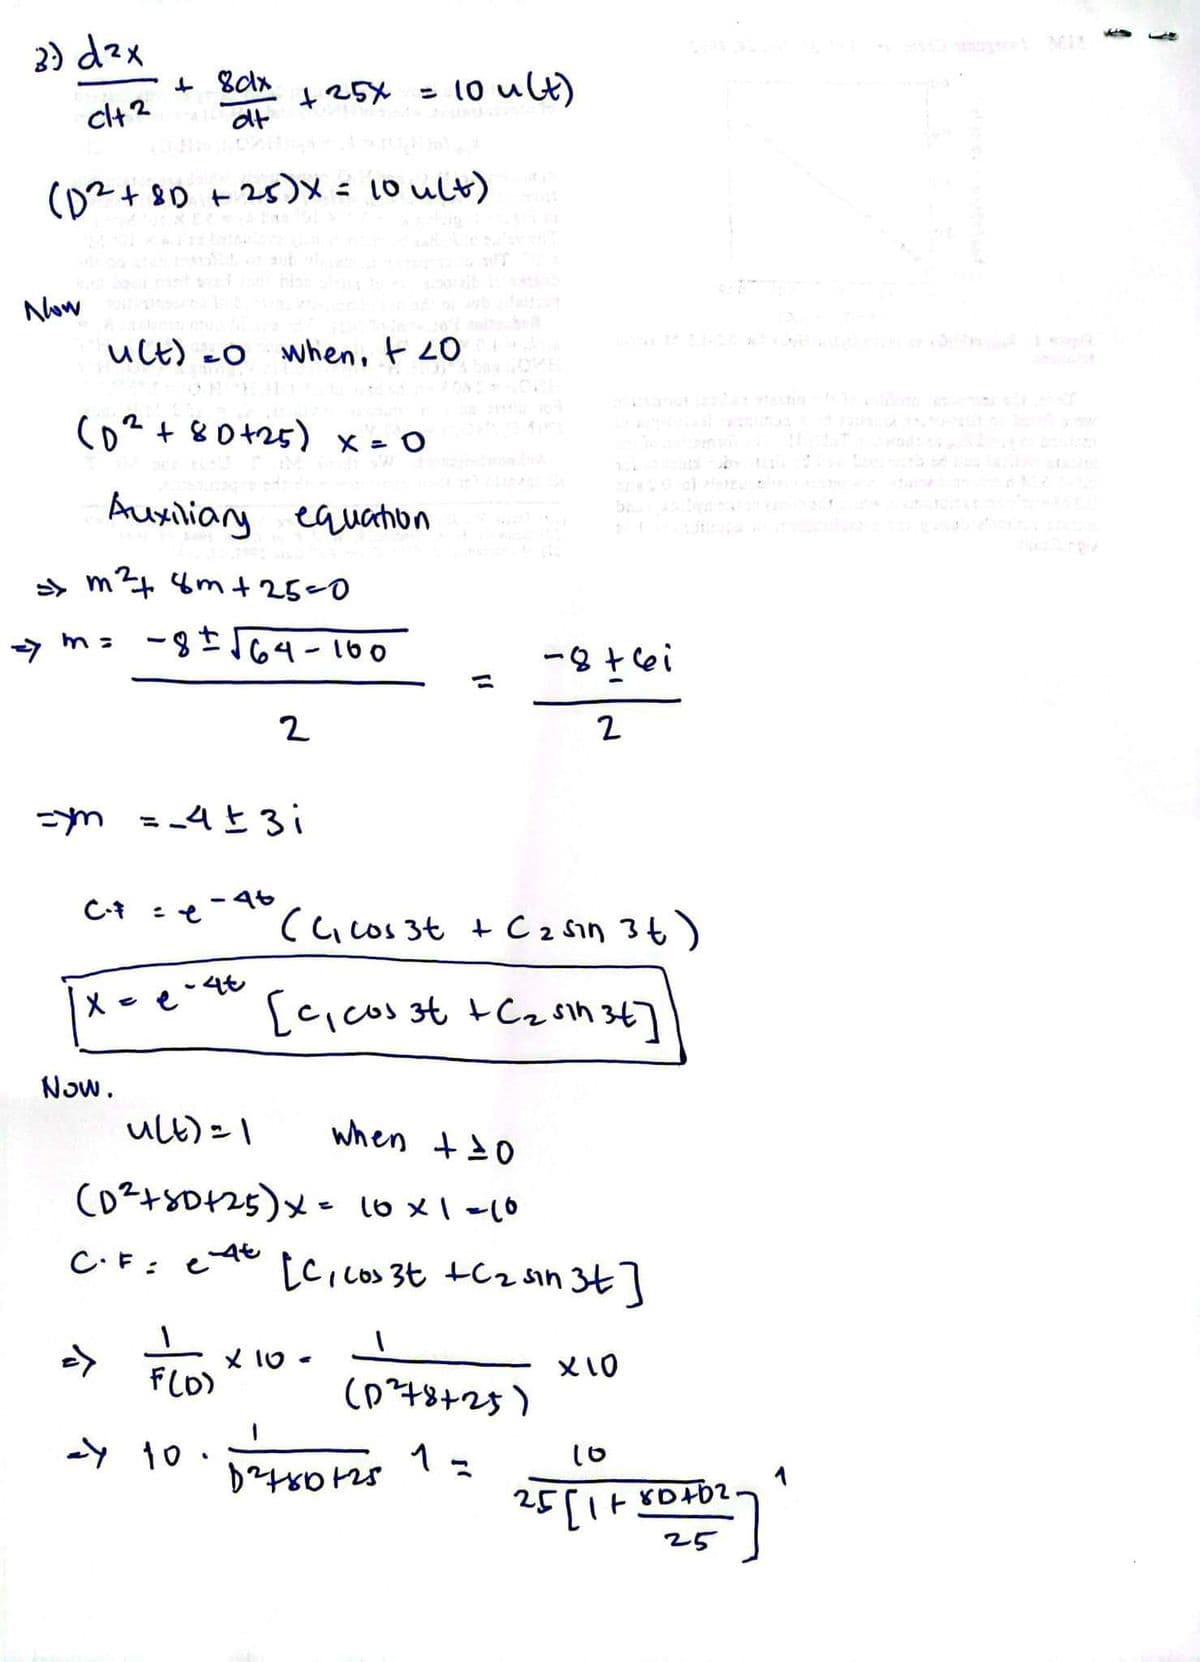 3) d²x
clt2
Now
(D² +81 +25)X = 10 ult)
u(t)=0 when, + 20
2
(D² + 80 +25) x = 0
Auxiliary equation
>> m² 8m+25=0
=> m= -8± √64-100
C-F
+ 8clx
dt
X
=ym = _4 ± 3 i
Now.
+ 25x = 10 ult)
C.F=
=>
-4t
4t
2
u(t) = 1
when + 10
(D²+50+25) x = 10 x 1 =10
X
et
(C₁ cos 3t + C ₂ sin 3 t)
[c₁ cos 3t + C₂ sin 34]
[C, cos 3t +C₂ sin 3t]
x 10.
-8+6i
2
F(D)
24 10 0²24+80125
(0²78725)
1=
x 10
91
80402
25
25[1+801